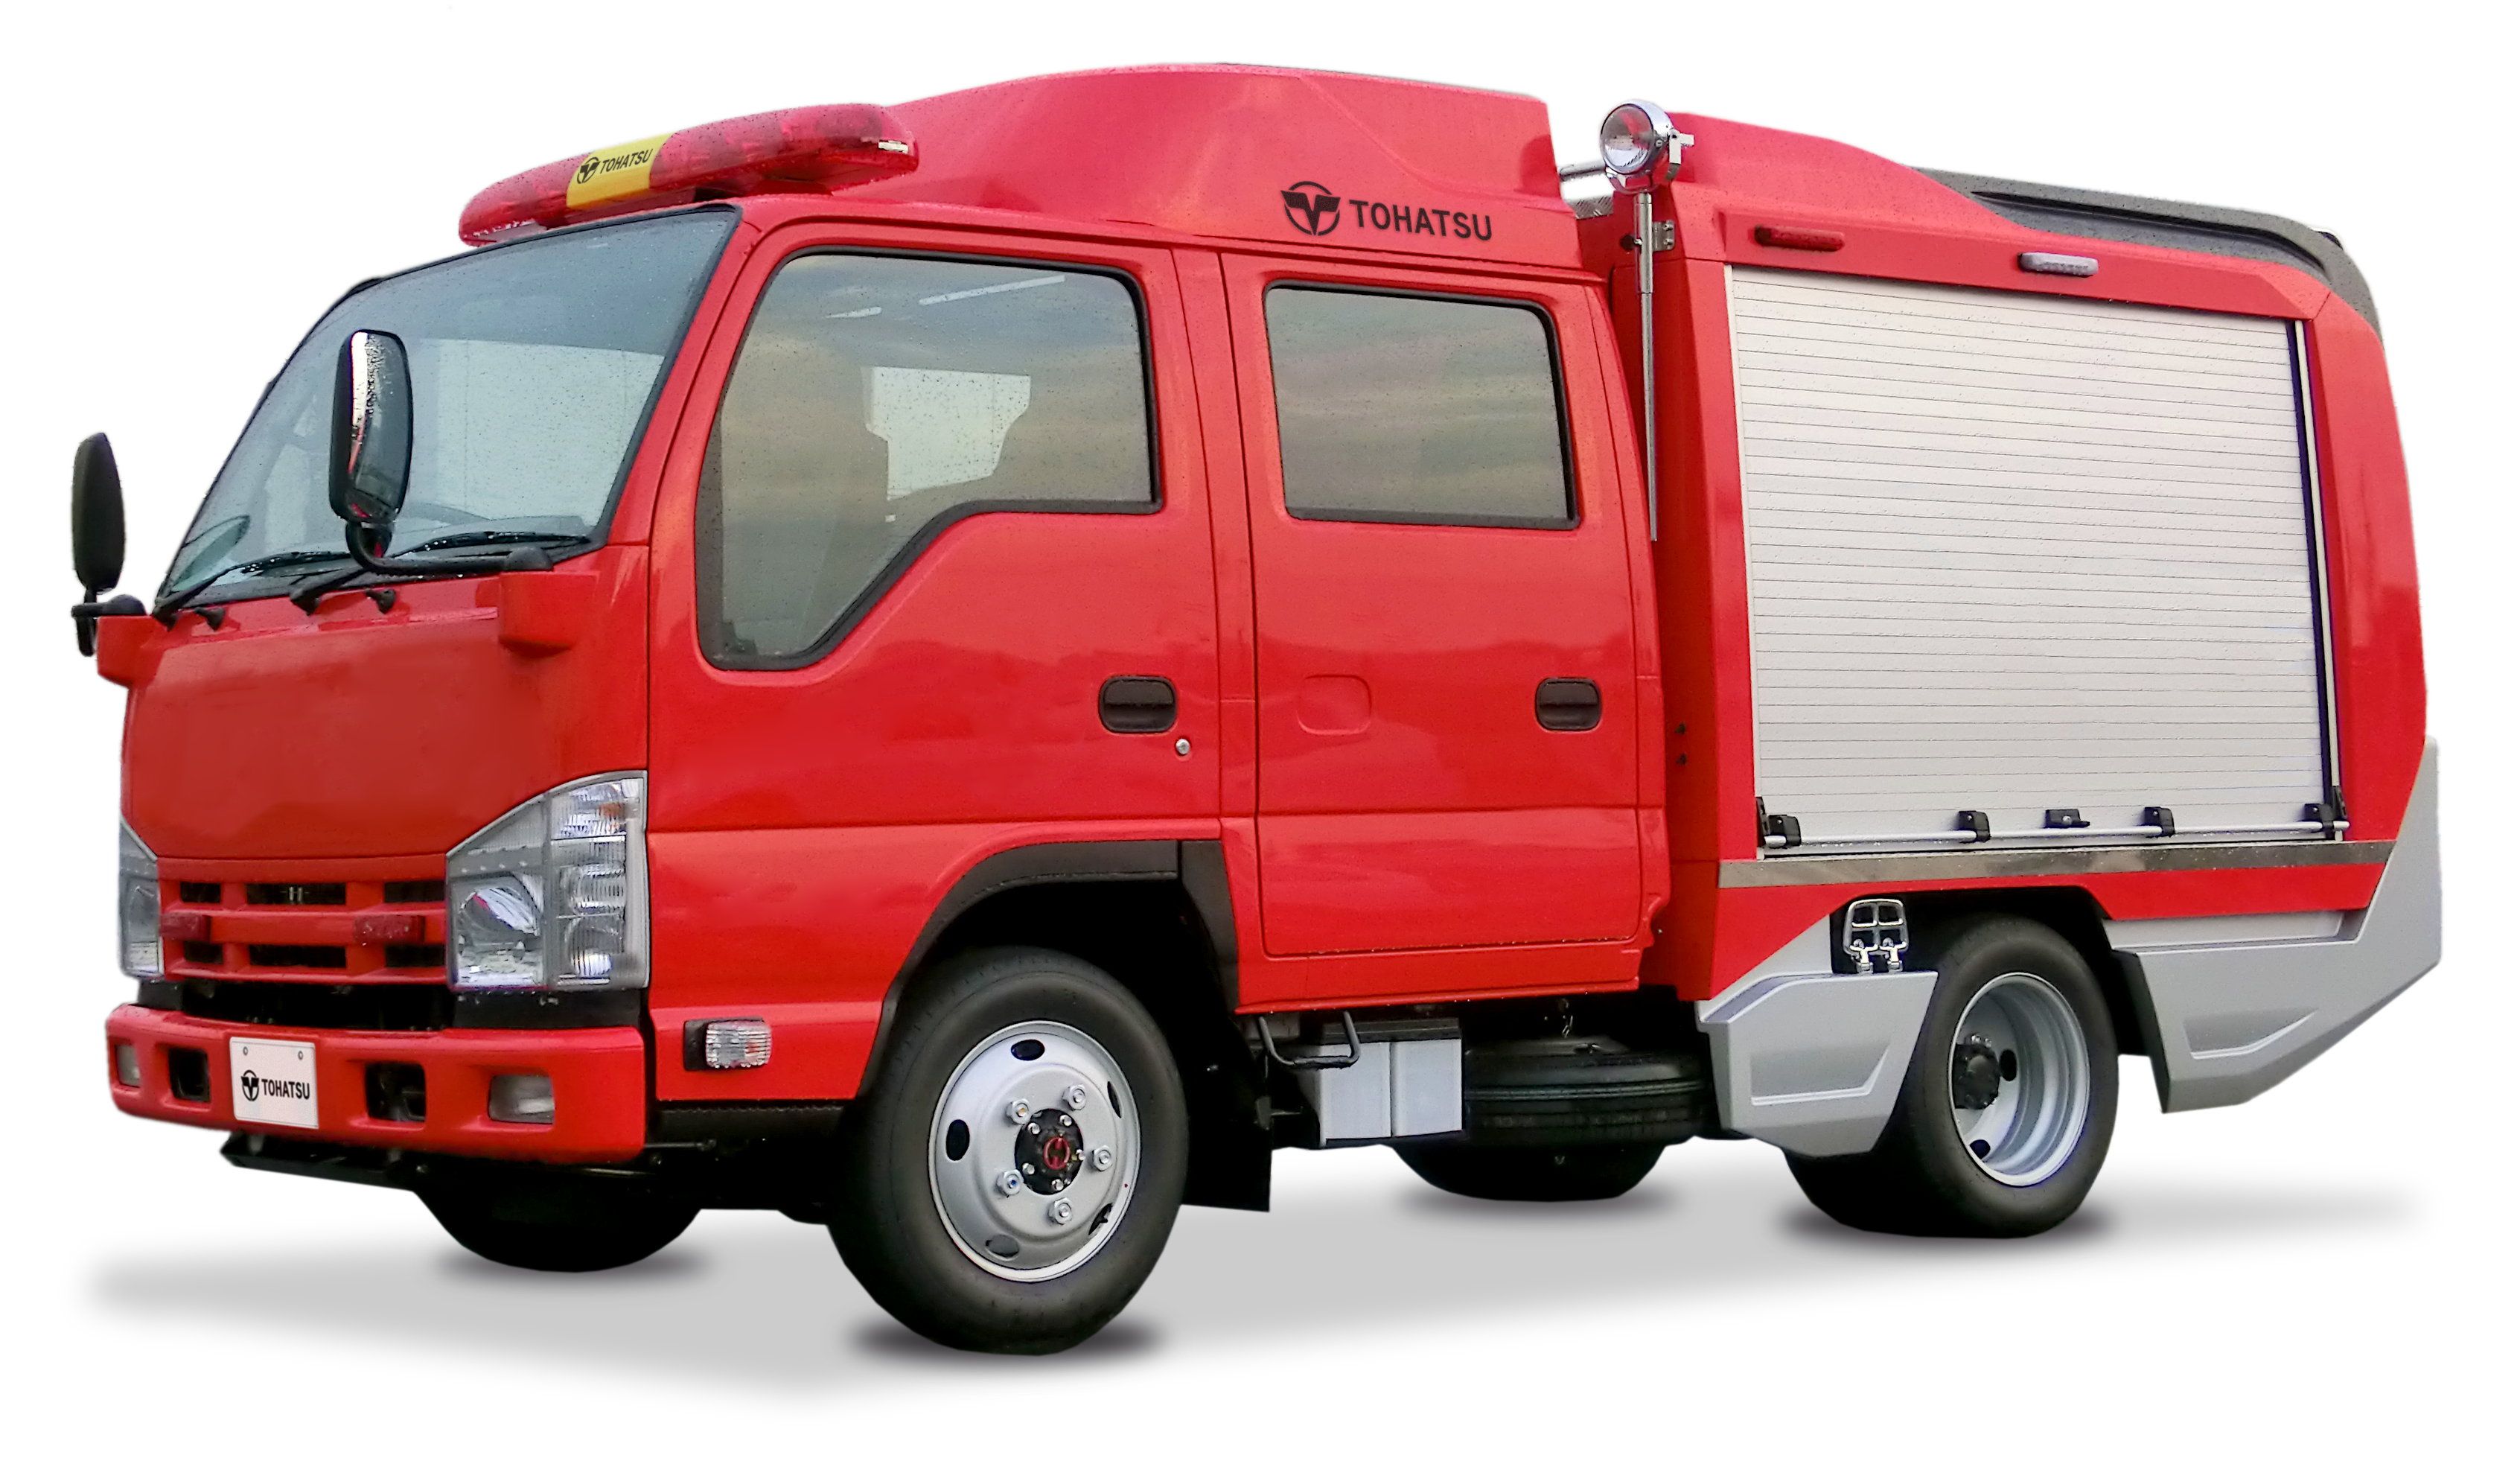 可搬消防ポンプ積載車 多機能型積載車 消防 特殊車両 トーハツ株式会社